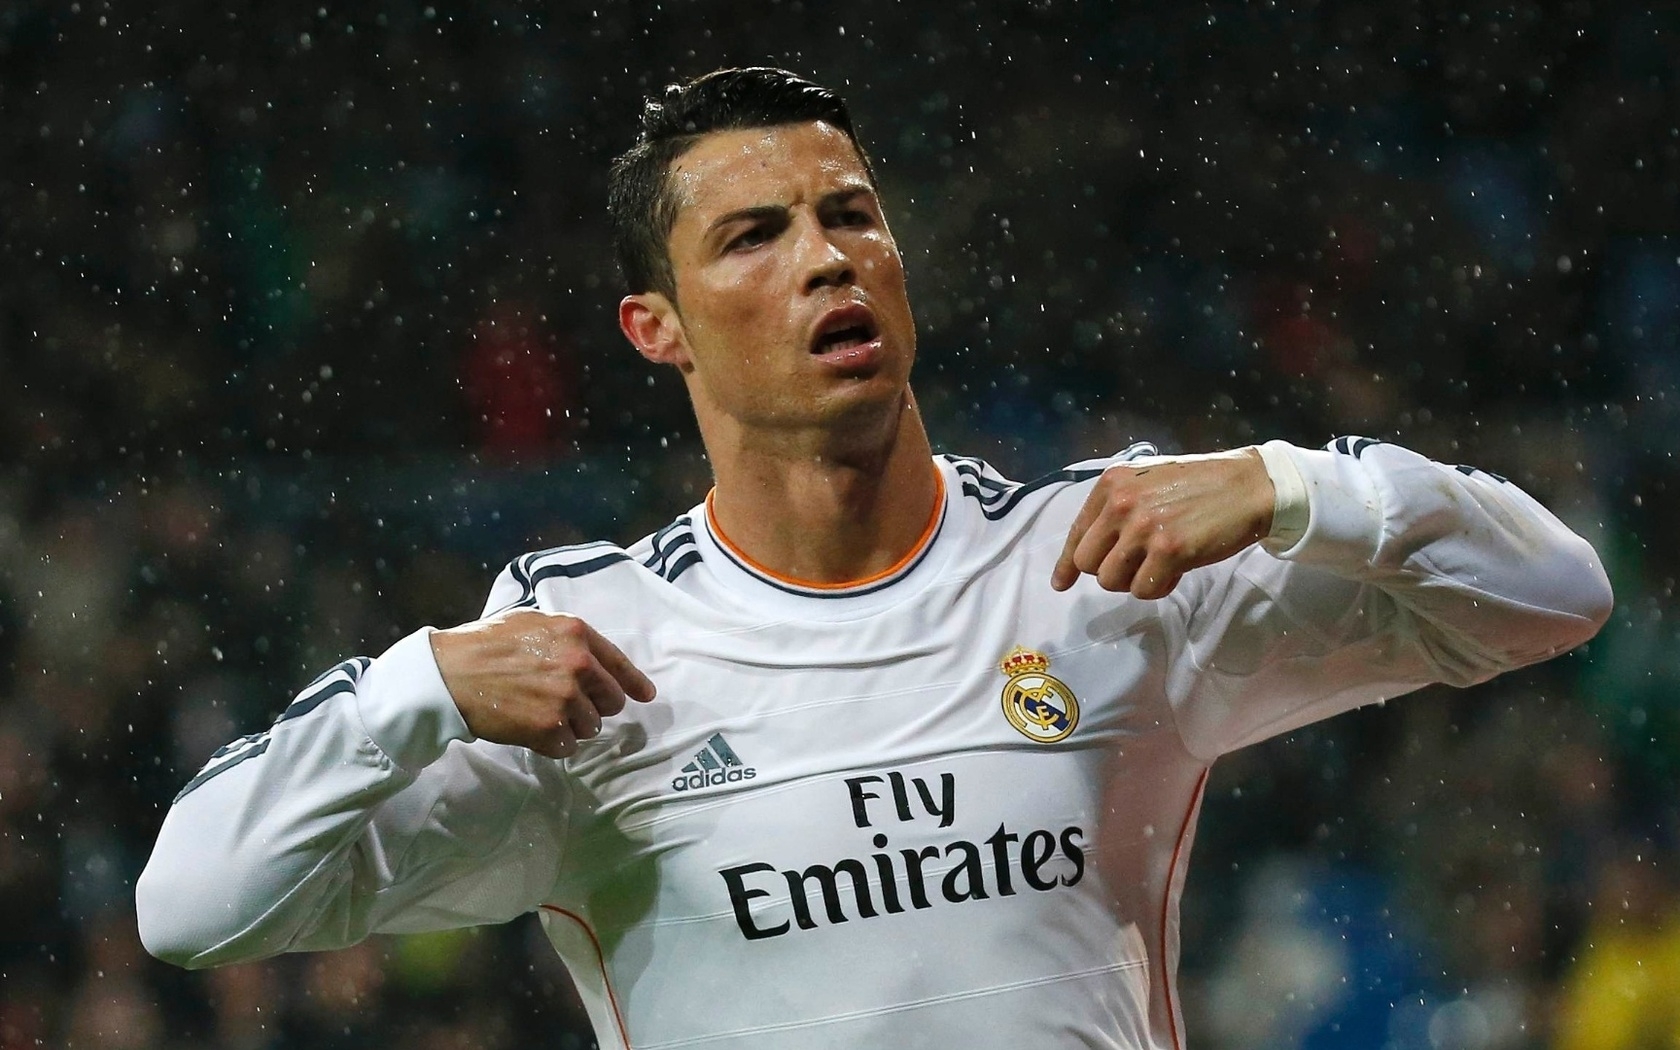 Cristiano Ronaldo in Rain for 1680 x 1050 widescreen resolution